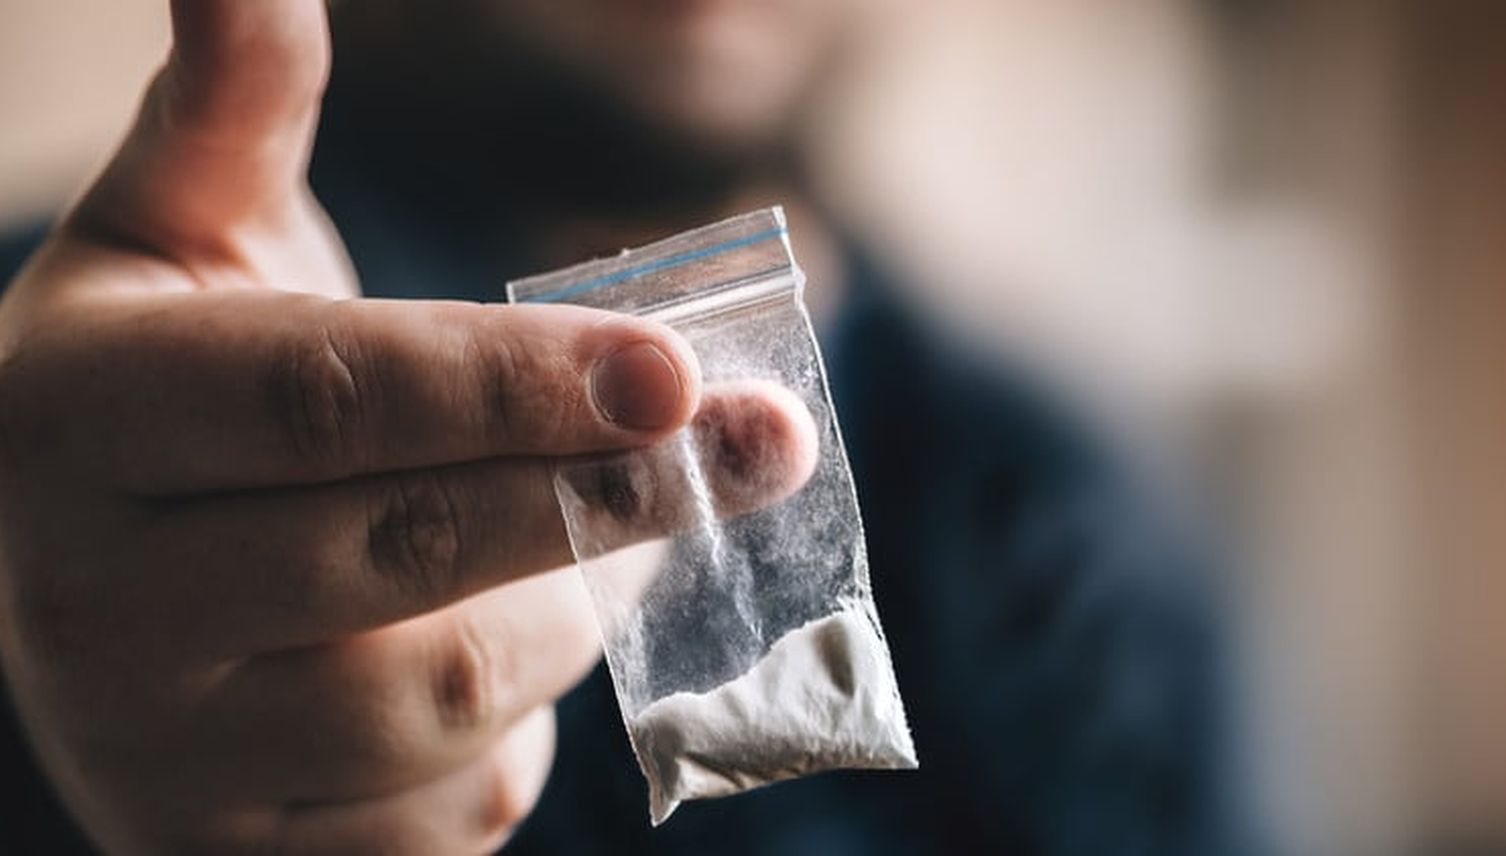 Luzerner Kokain-Dealer wegen versuchter Tötung verurteilt